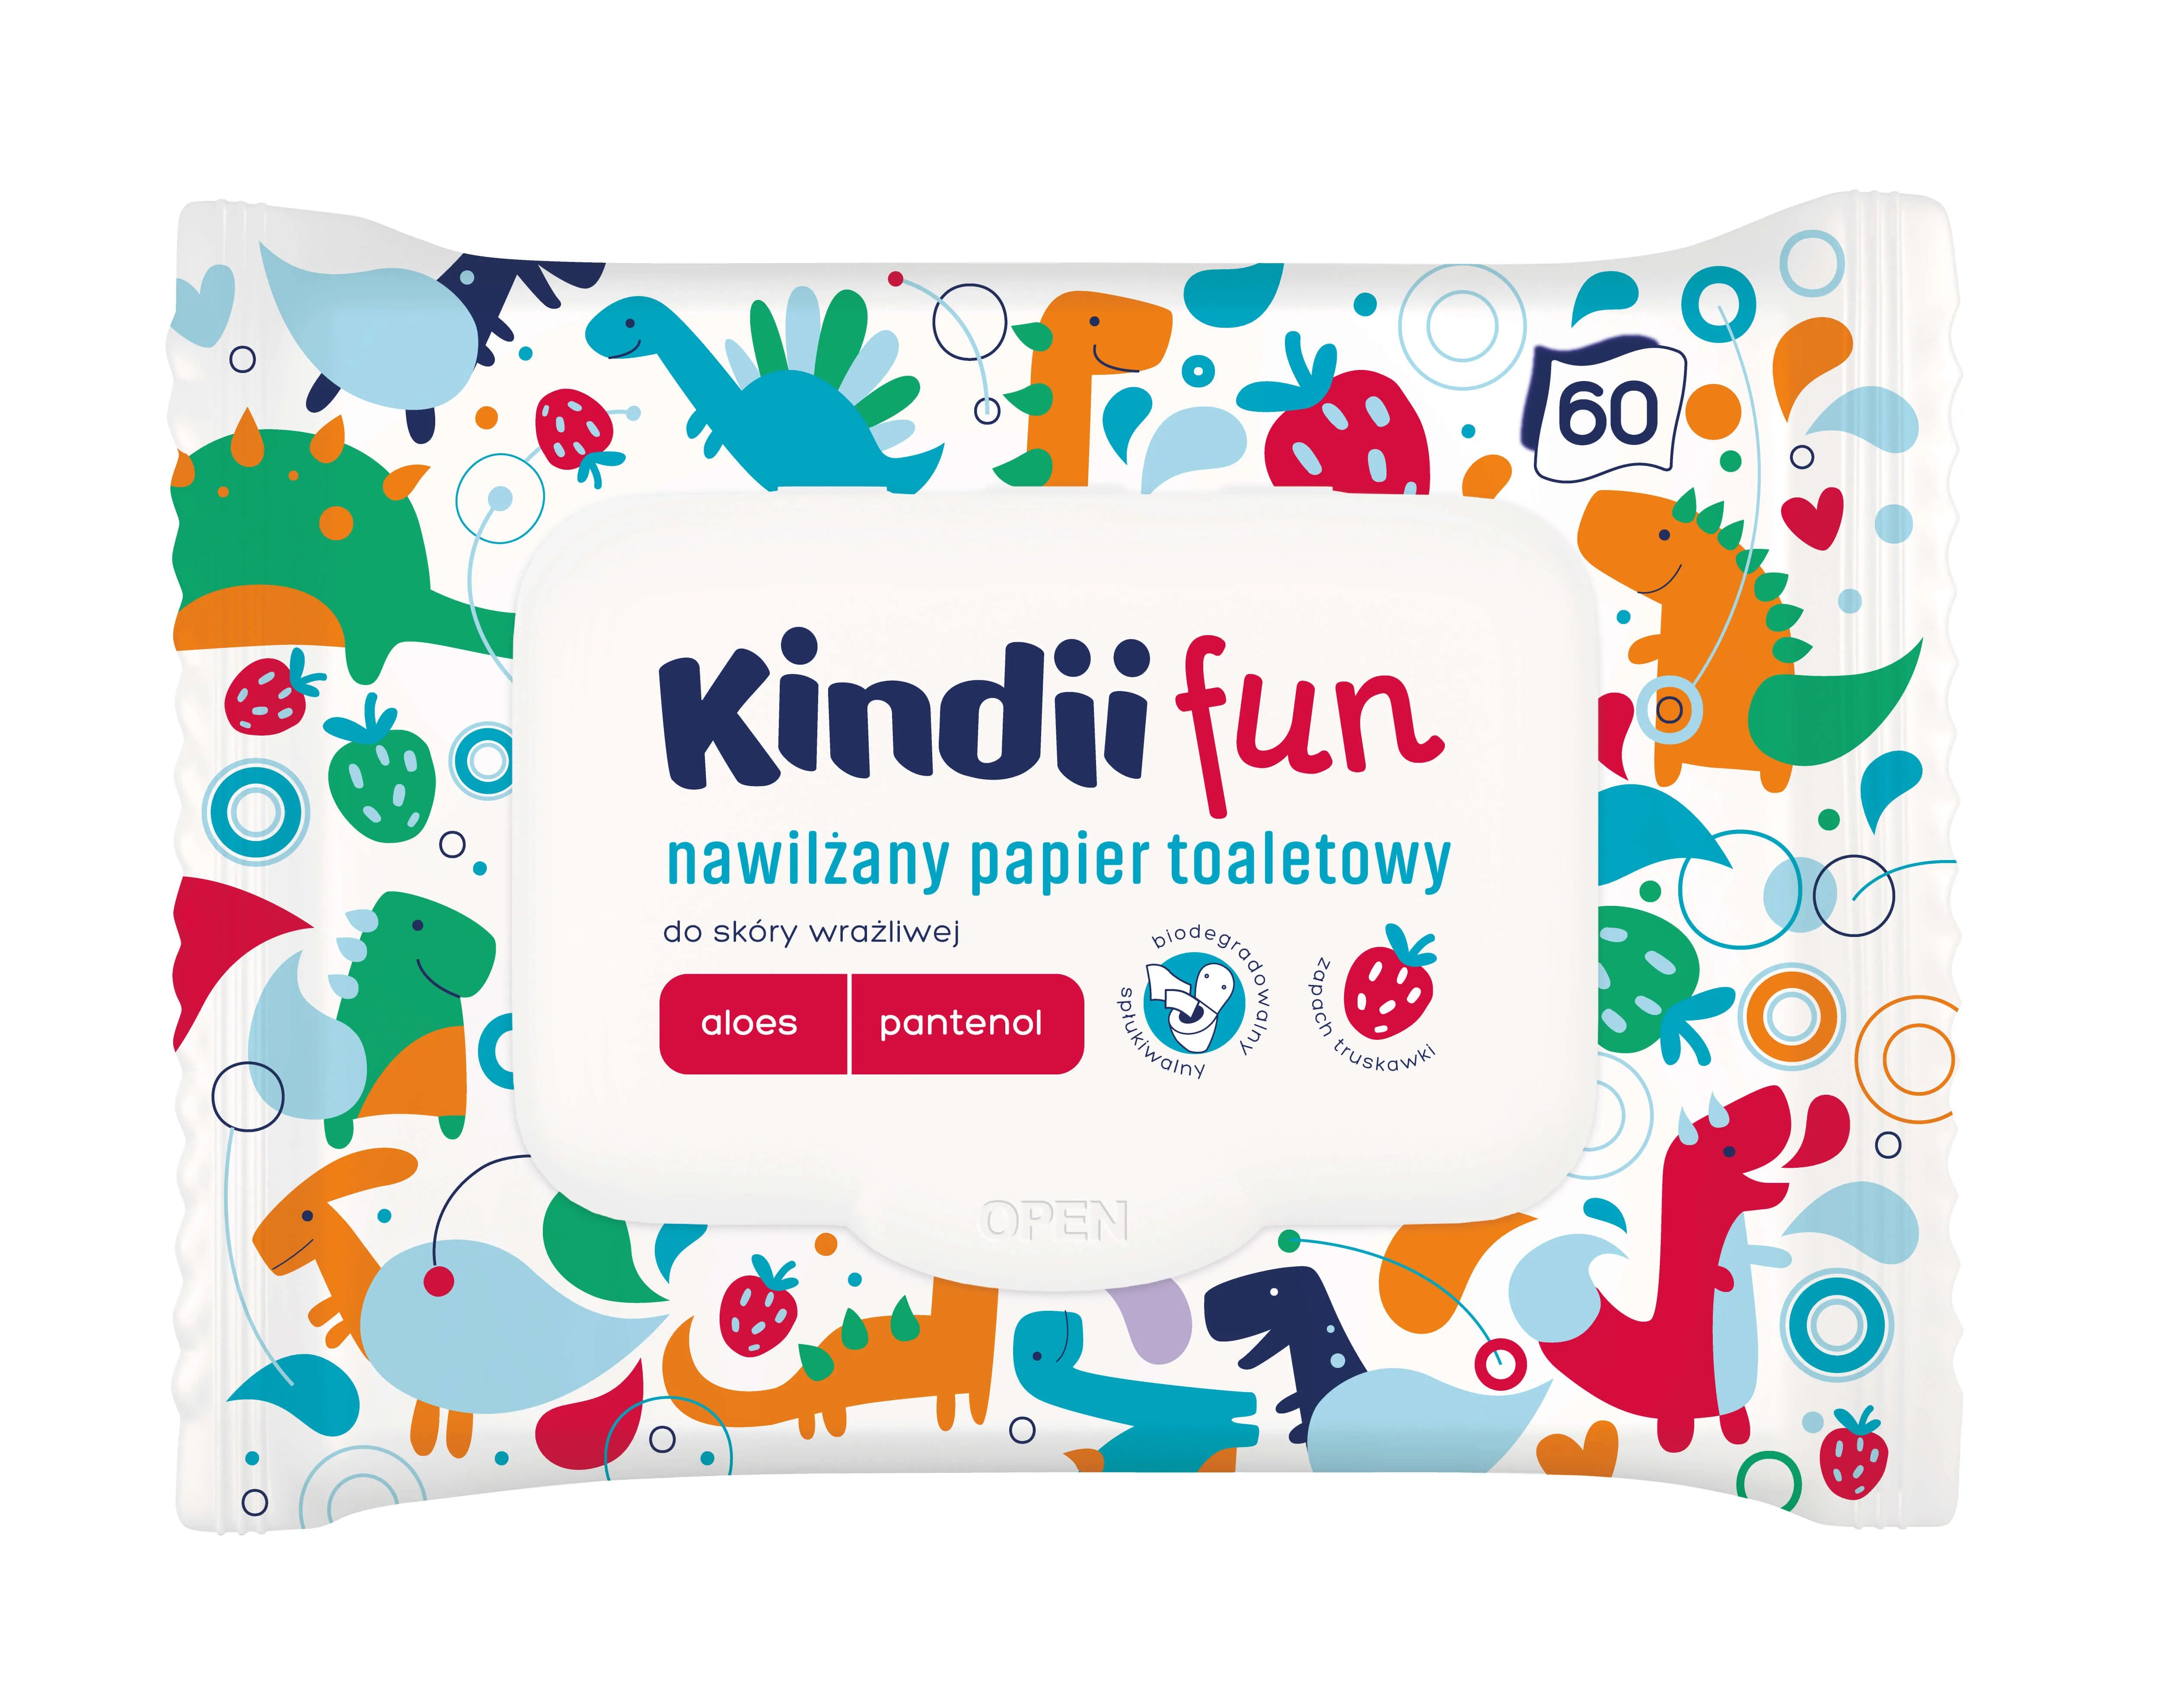 Kindii Fun, nawilżany papier toaletowy, 60 sztuk